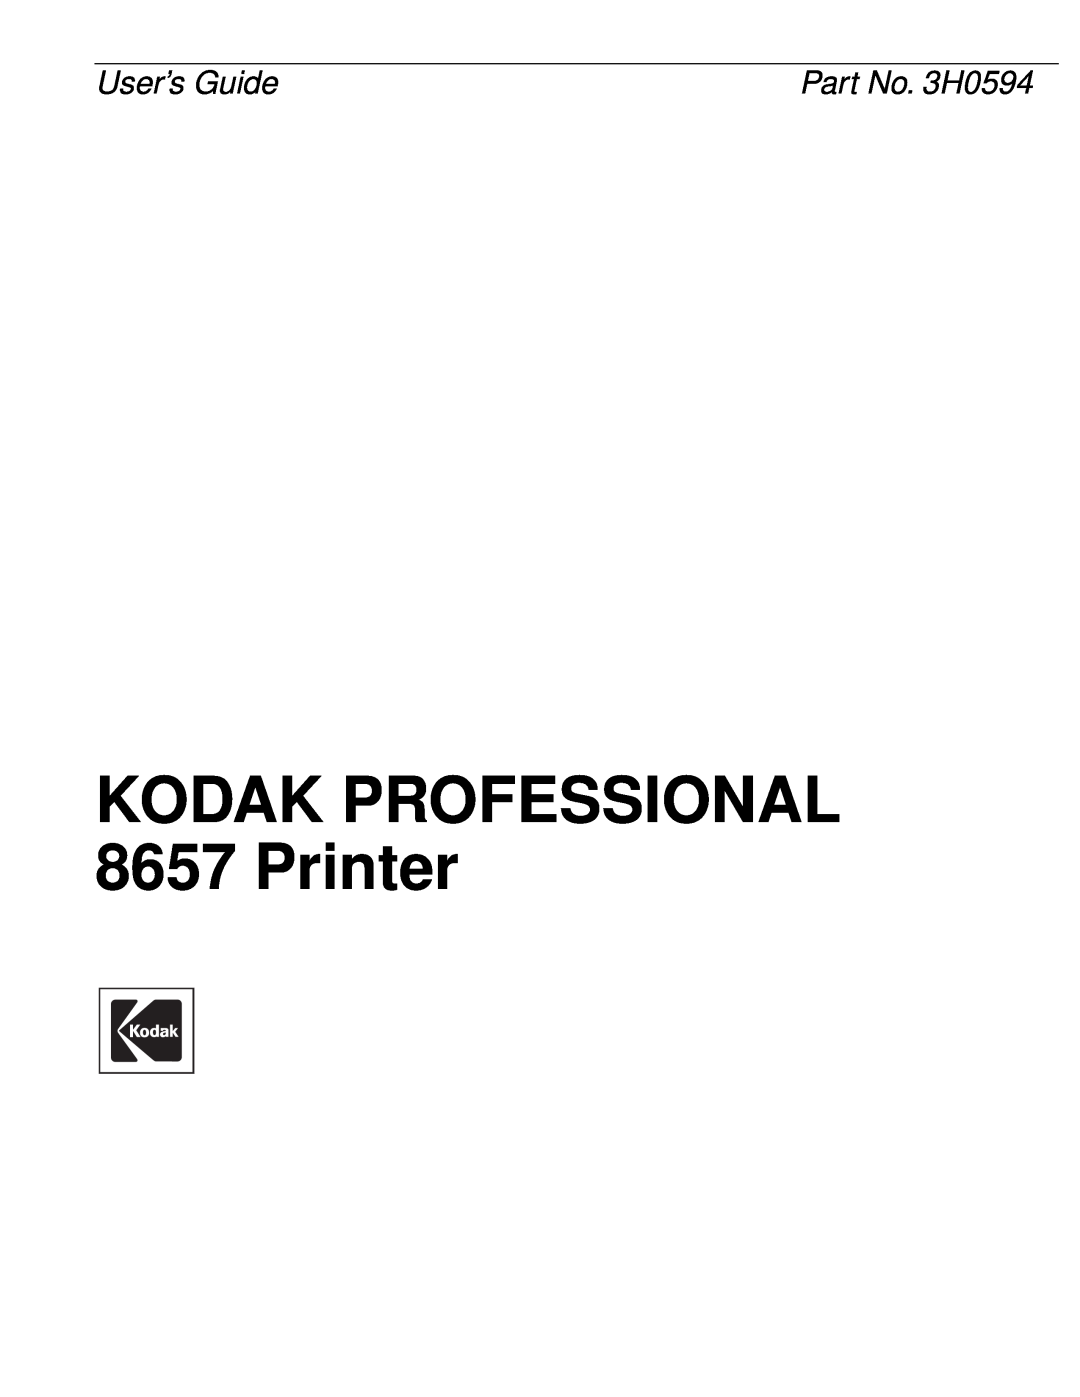 Kodak manual KODAK PROFESSIONAL 8657 Printer, User’s Guide, Part No. 3H0594 